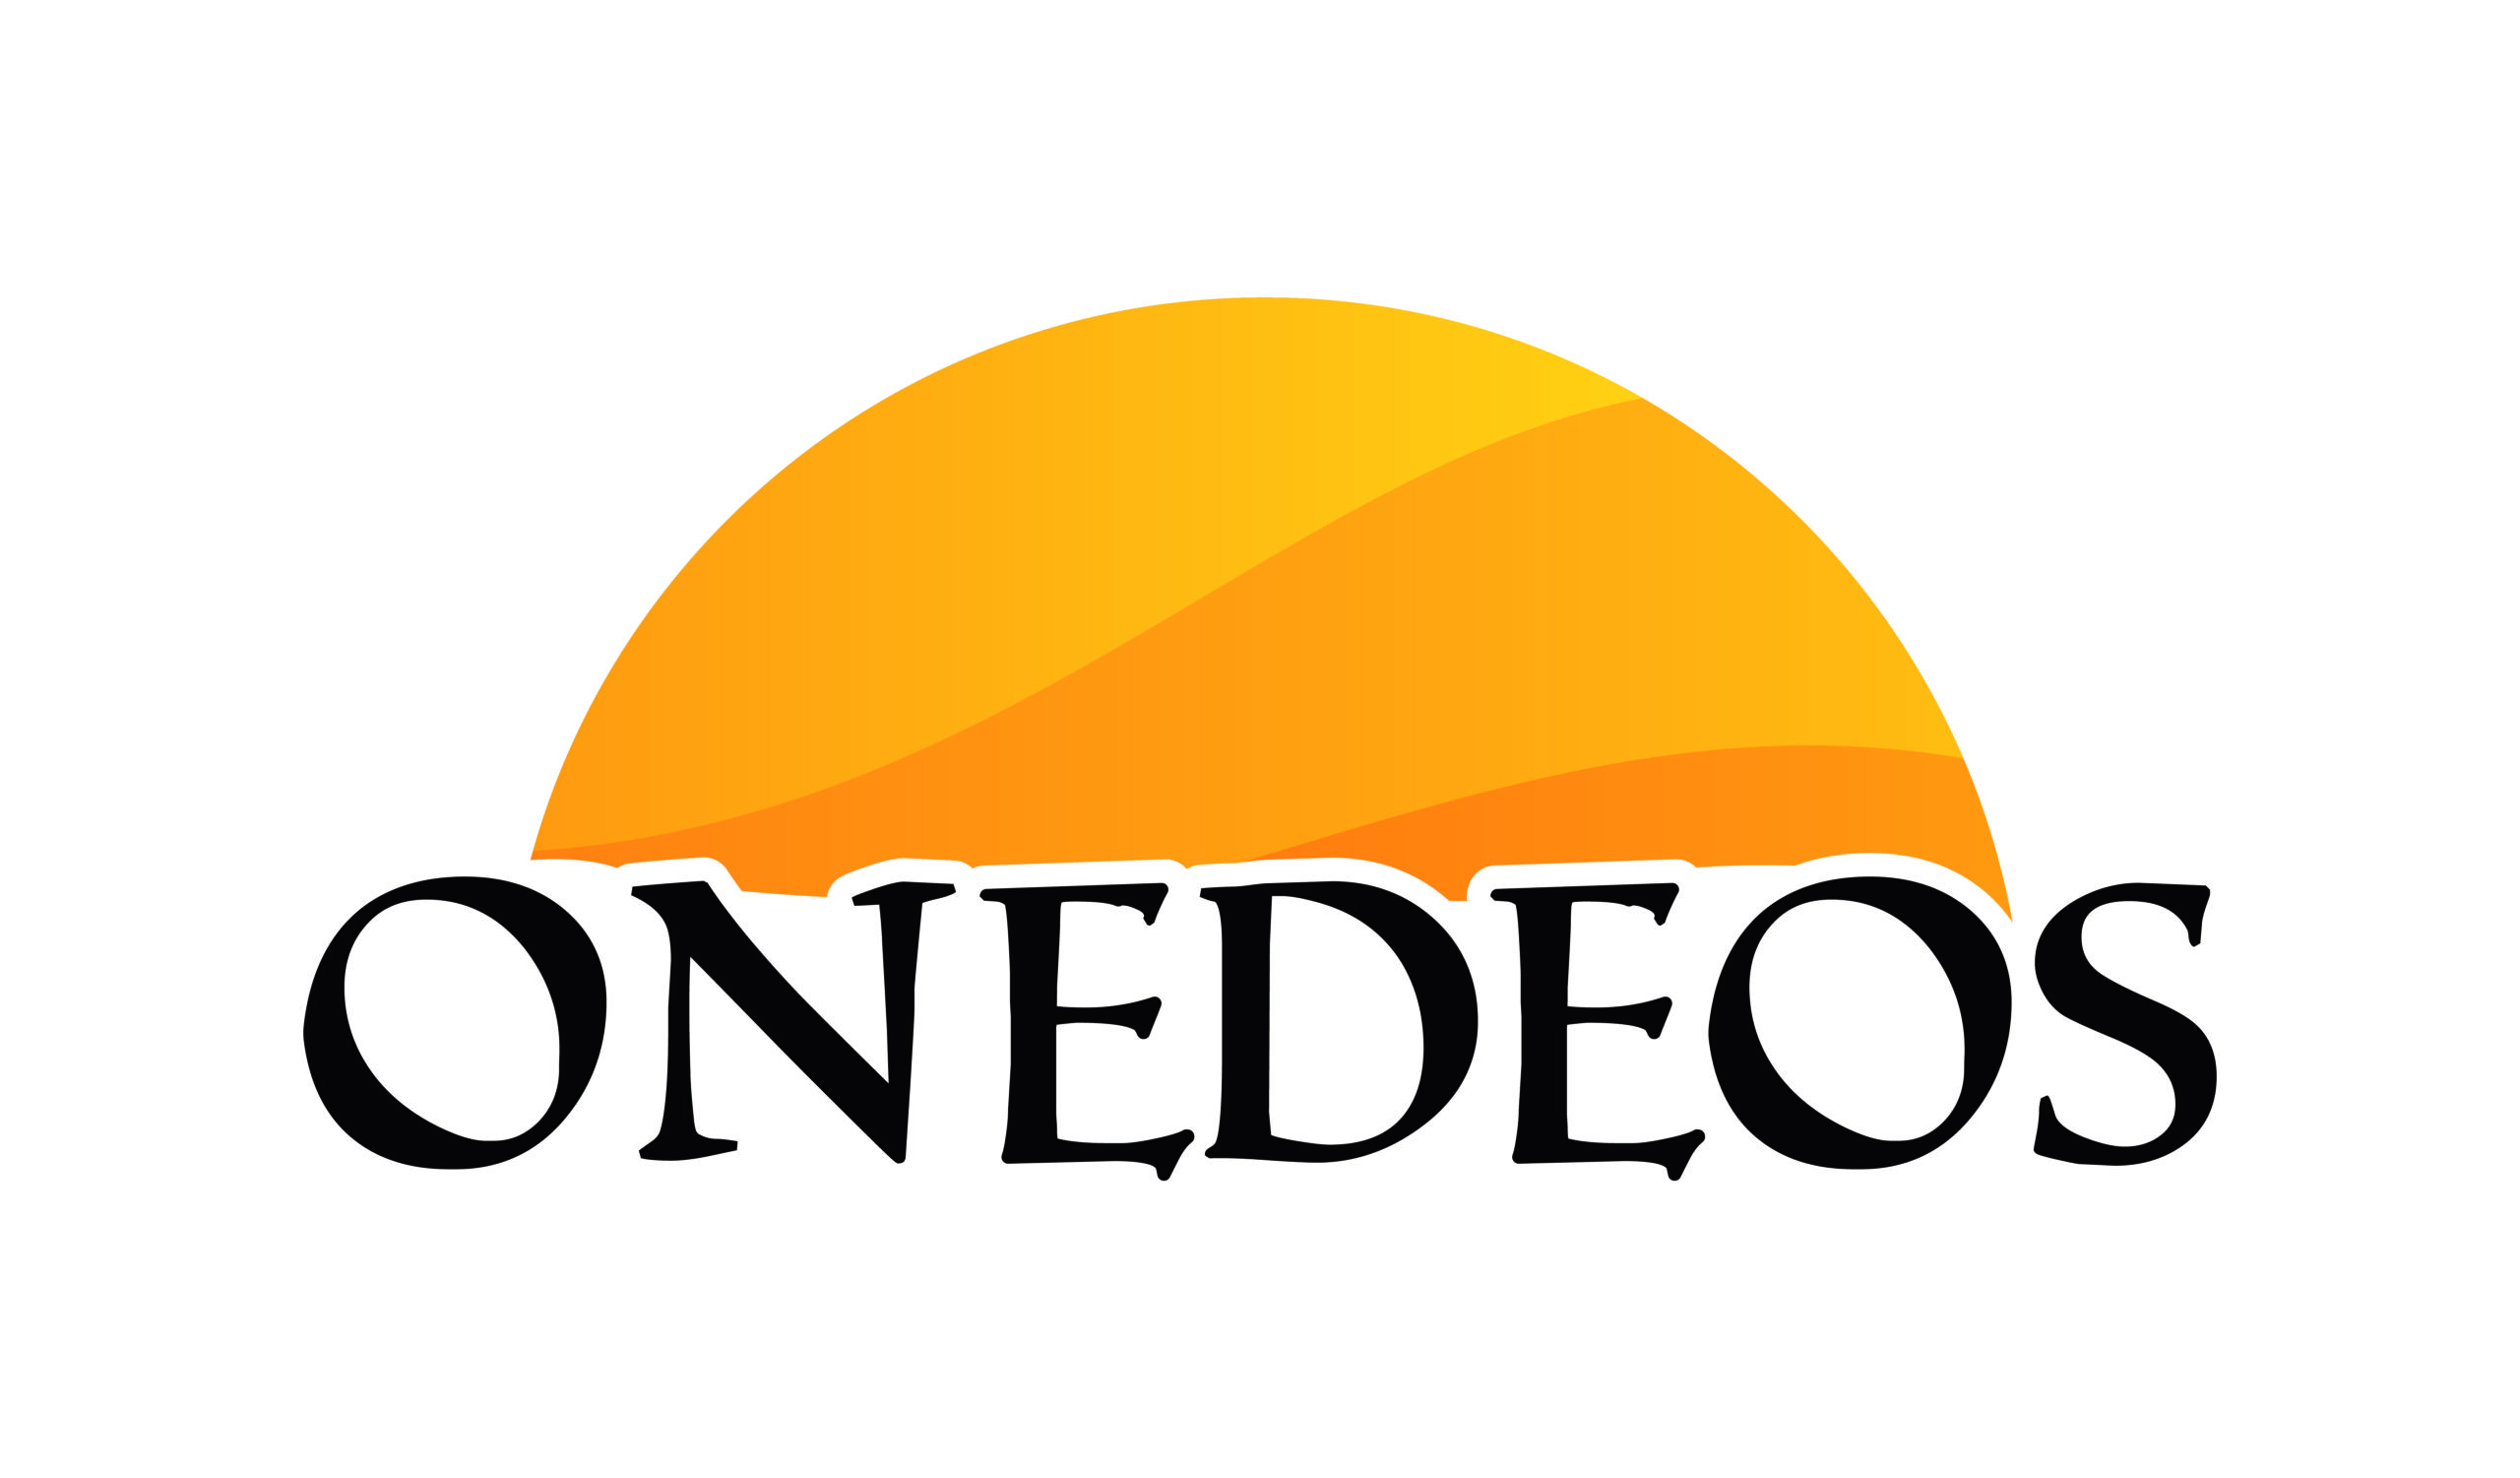 Logo onedeos panneaux solaire